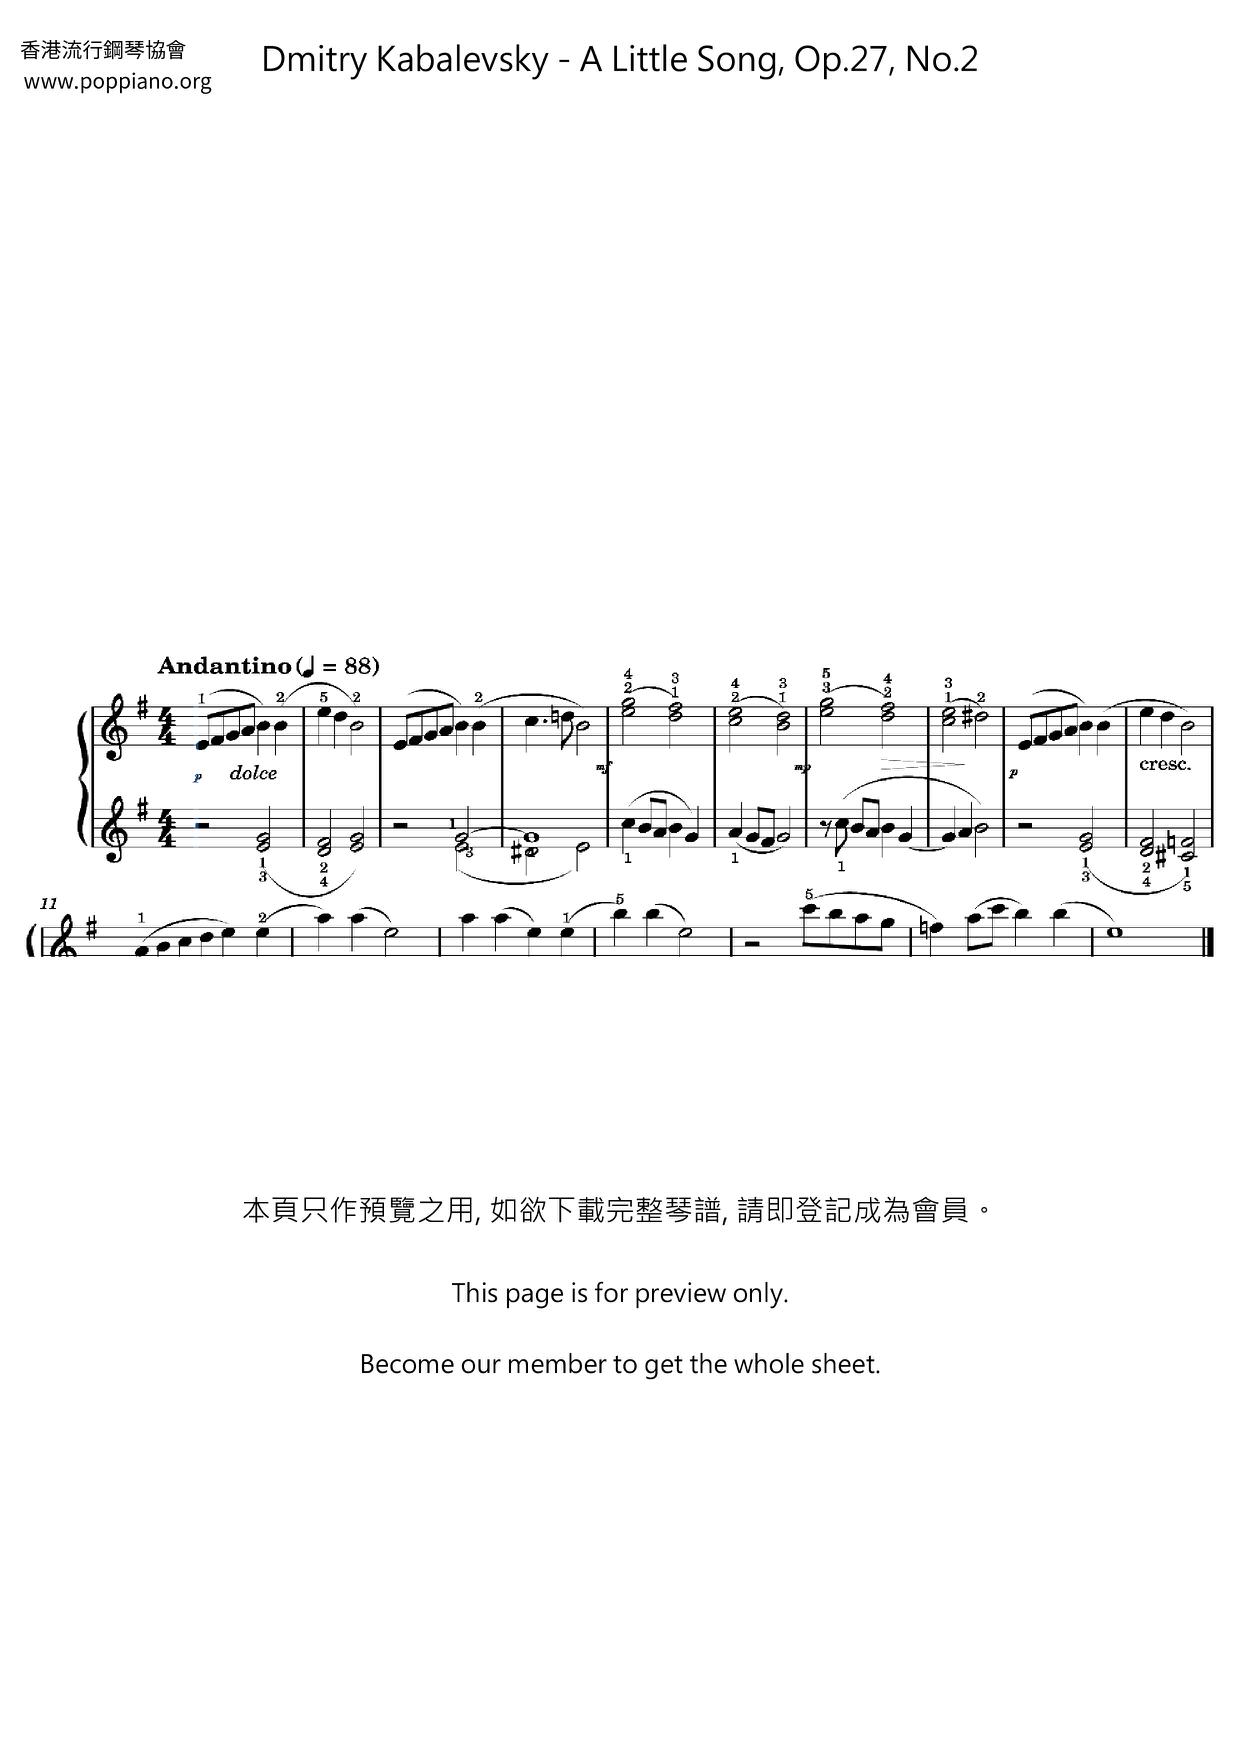 A Little Song, Op.27, No.2 Score